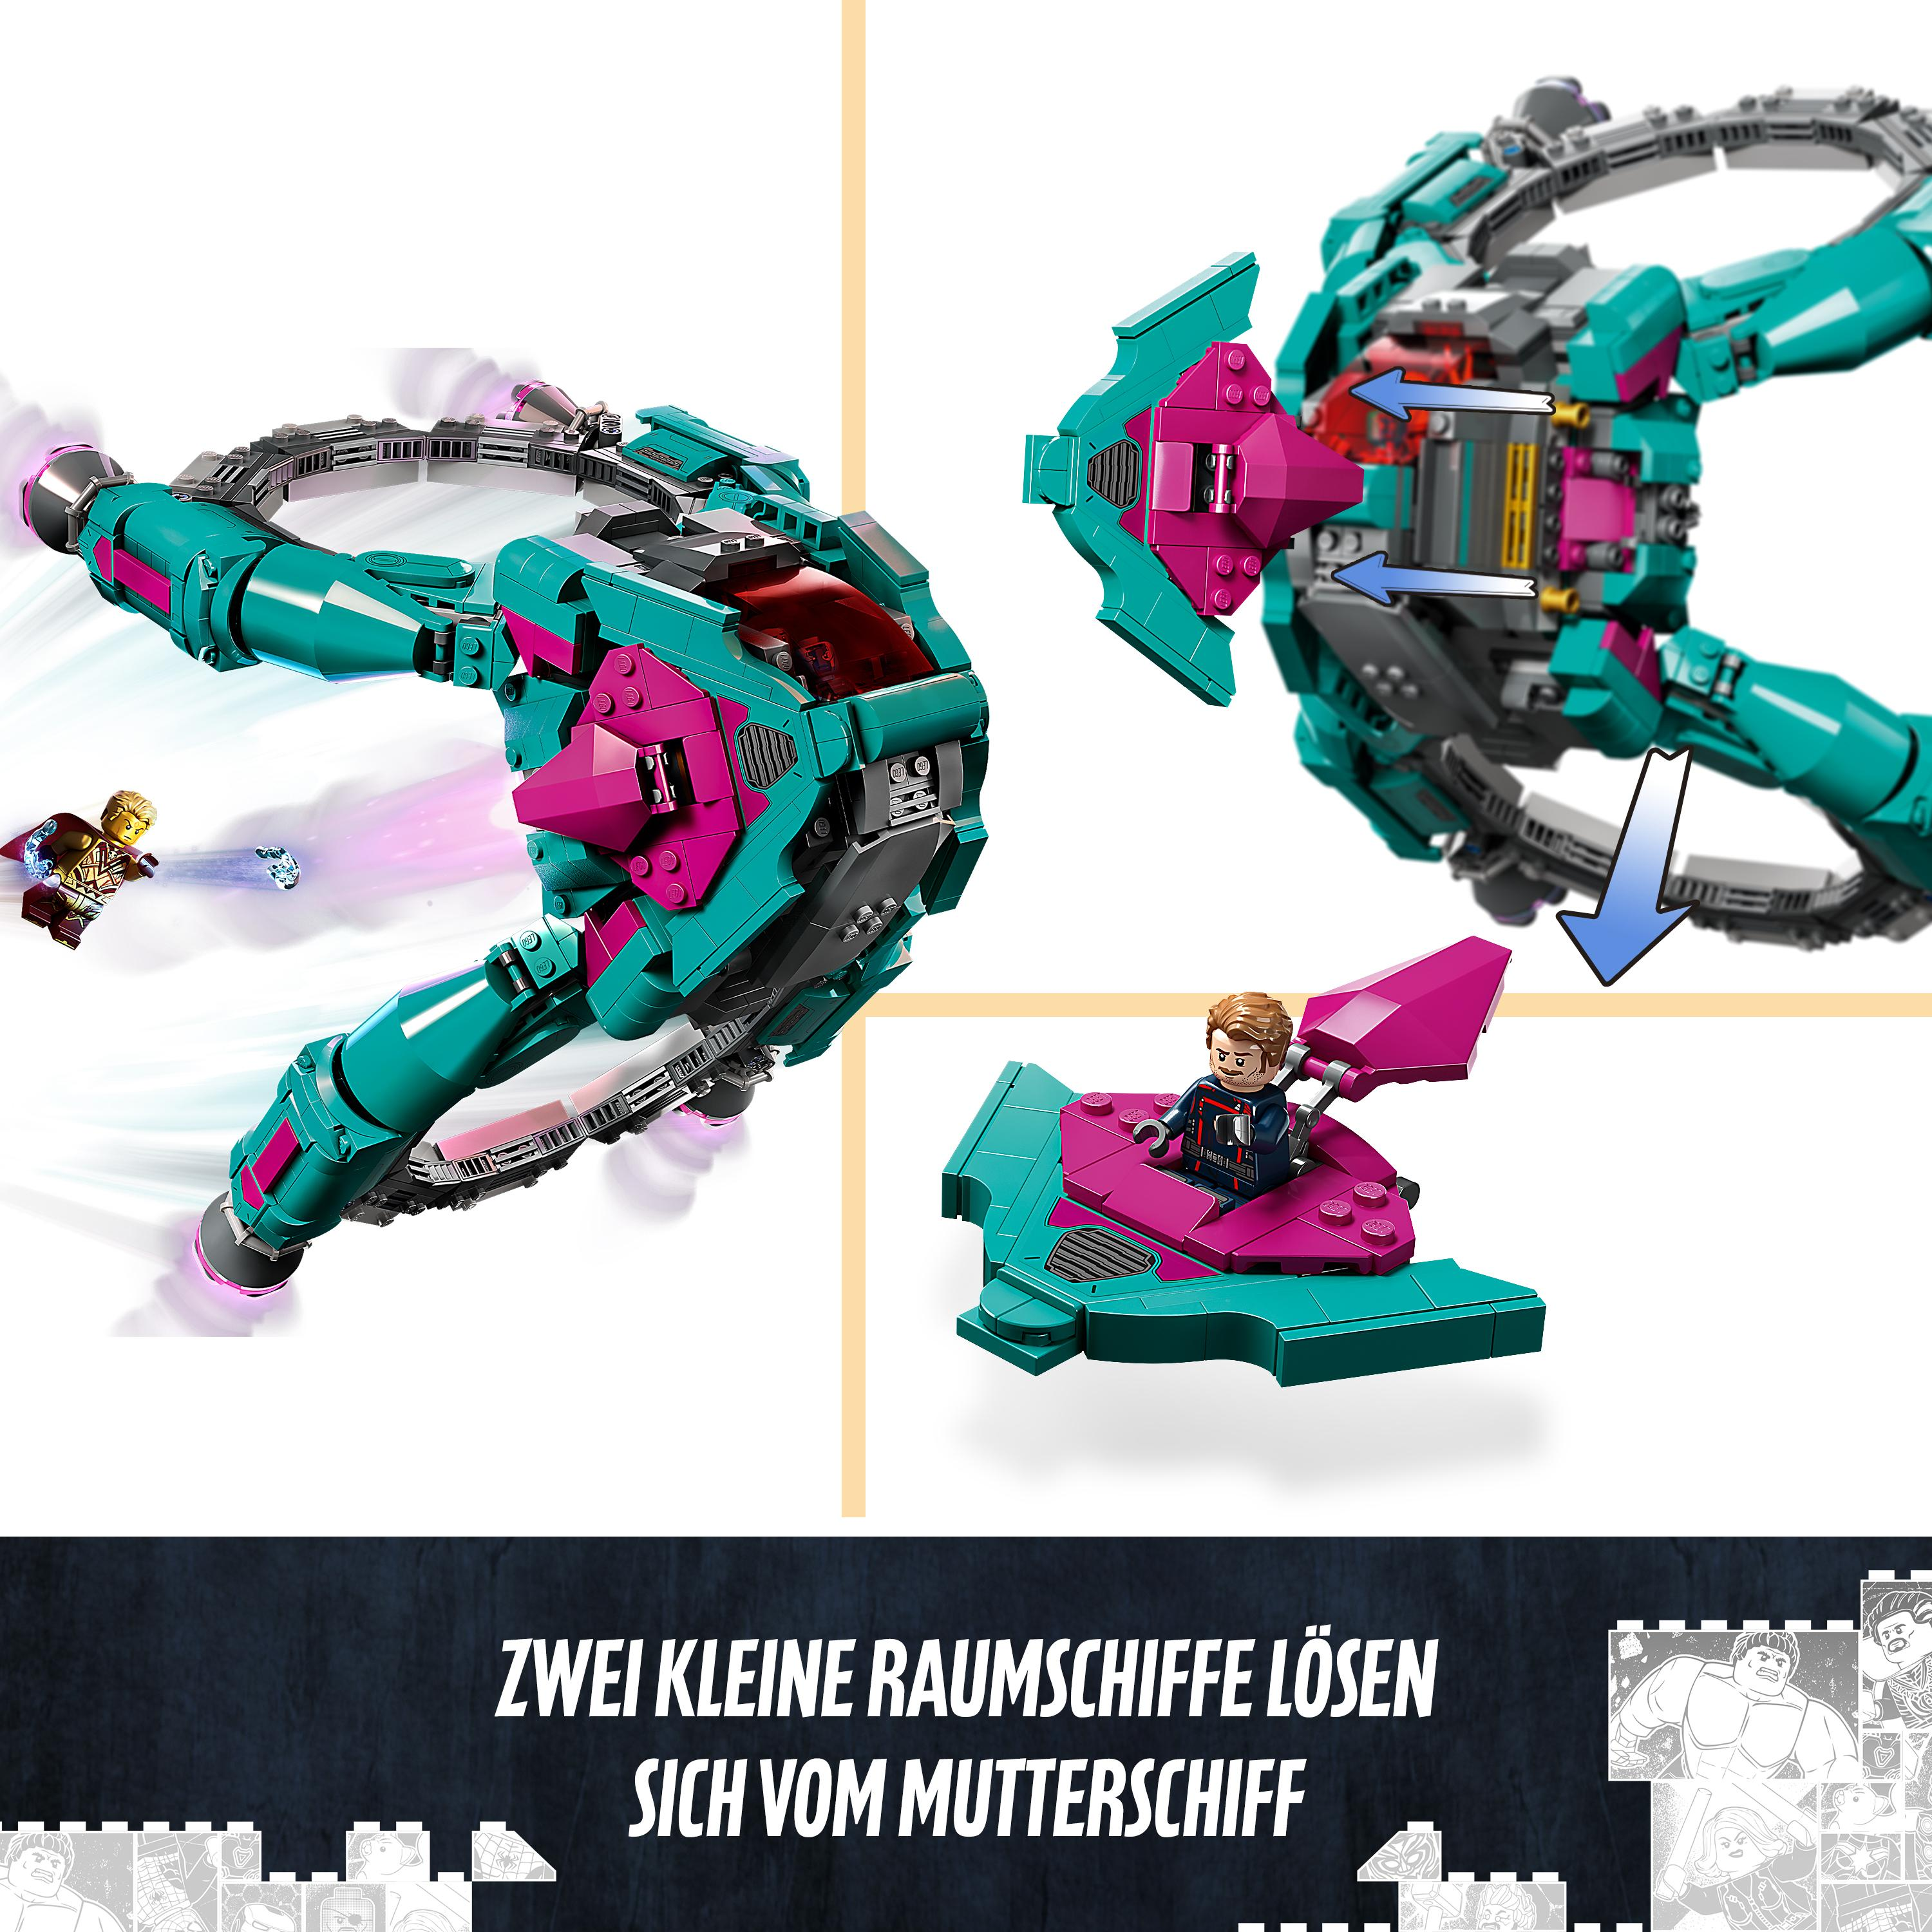 LEGO Marvel 76255 Das Bausatz, Guardians Schiff neue der Mehrfarbig